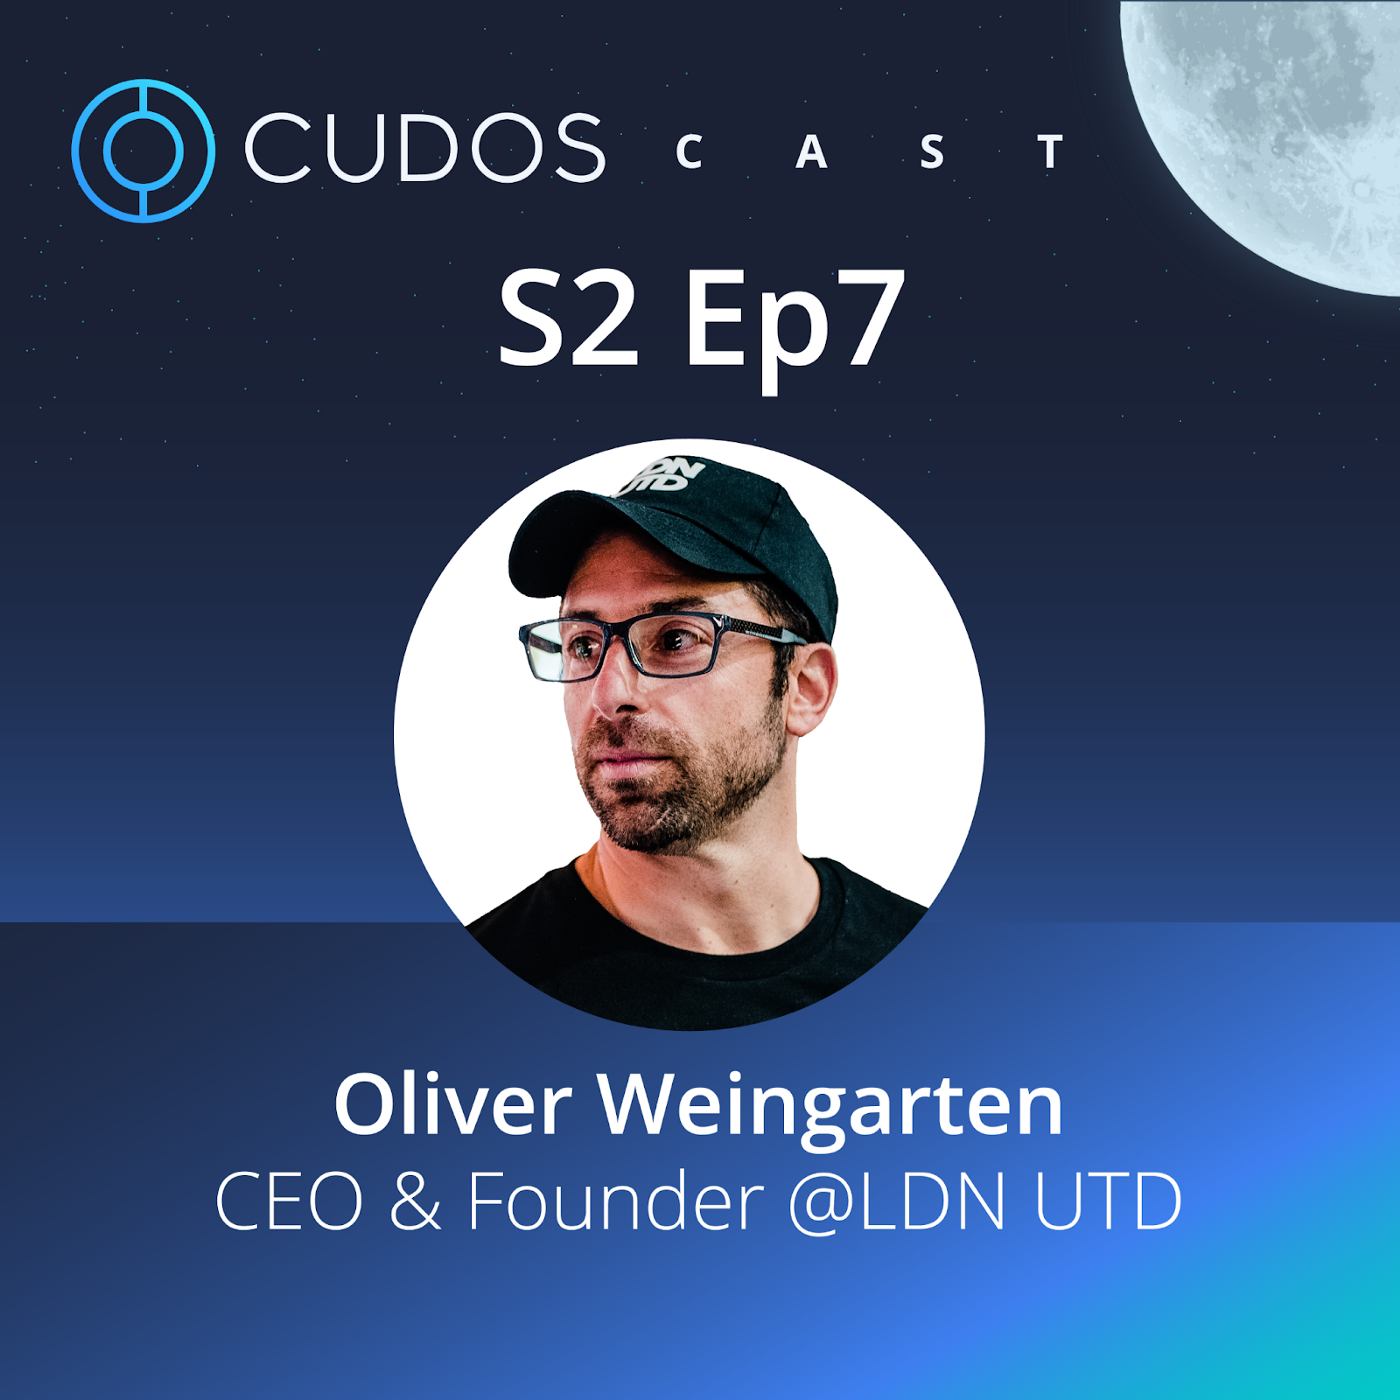 Next on CudosCast — LDN UTD’s CEO, Oliver Weingarten